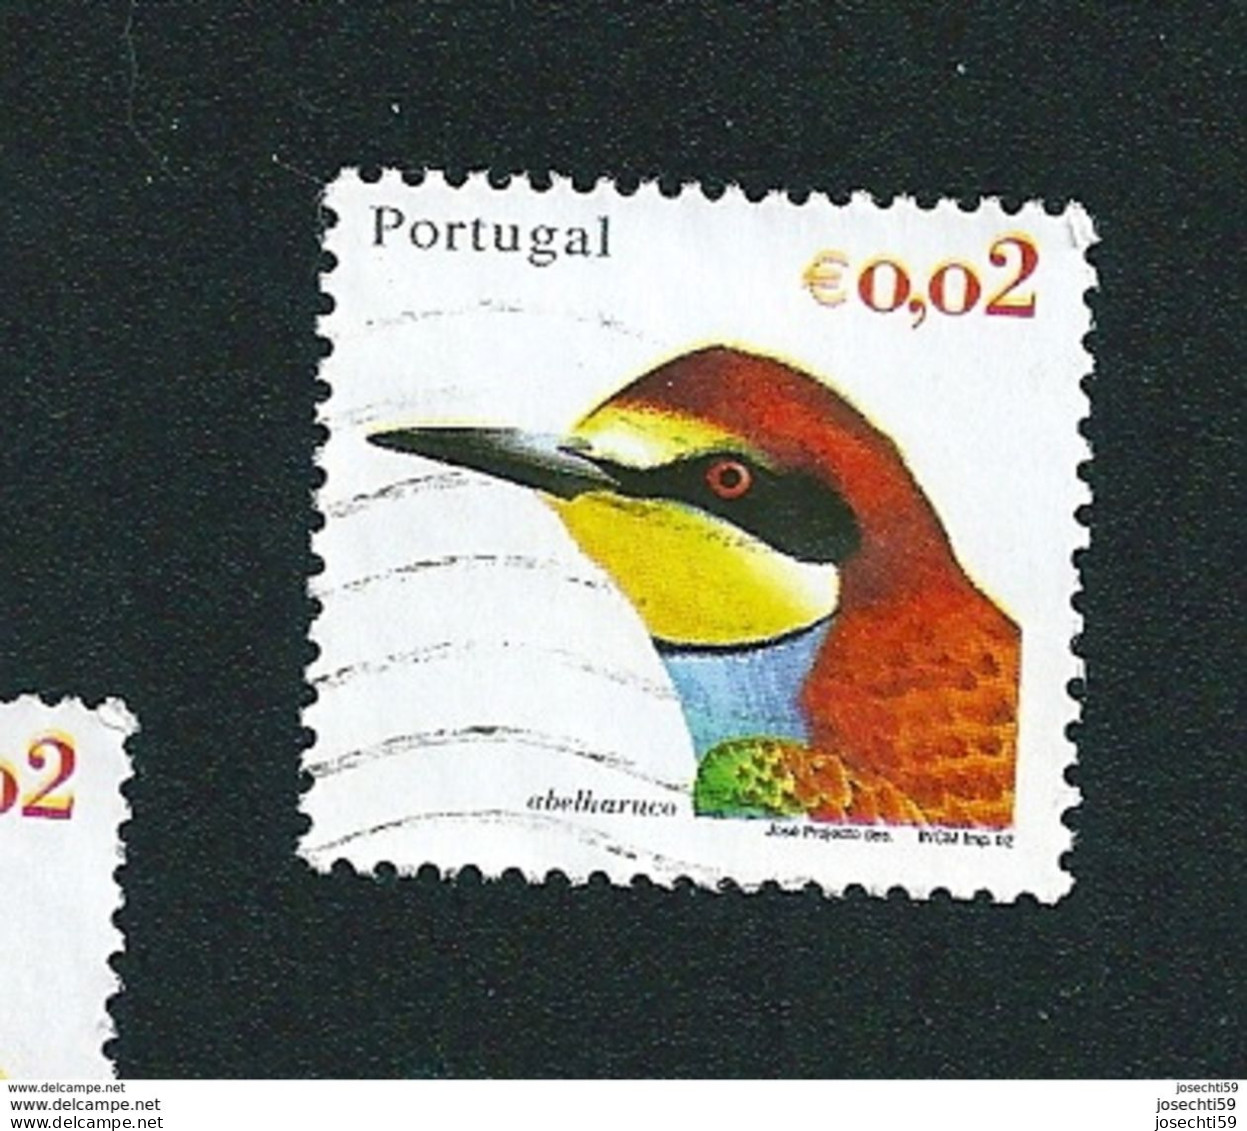 N° 2549 Oiseau Du Portugal Abelharuco   0.02 € Oblitéré Timbre  Portugal 2002 - Oblitérés